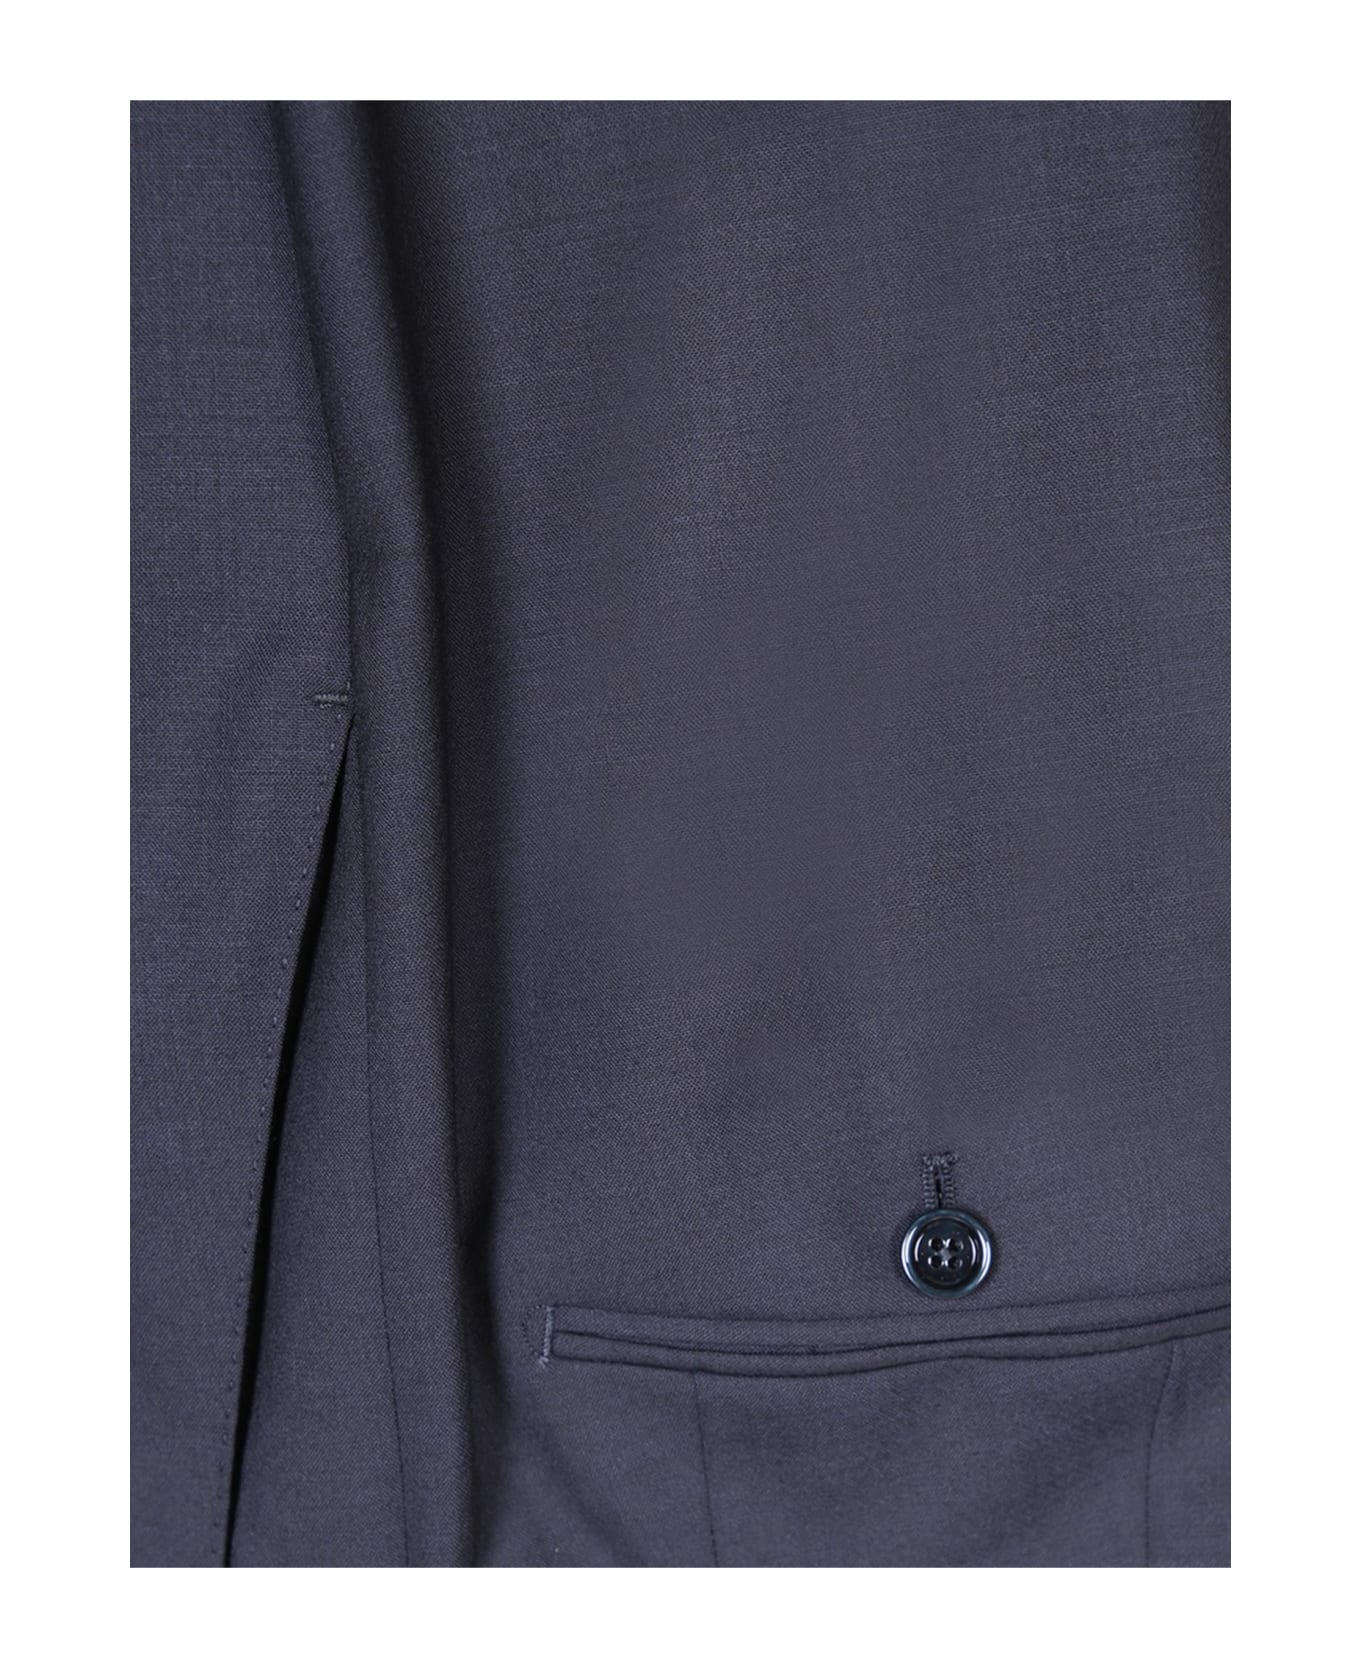 Lardini Stretch Fabric Blue Suit - Blue